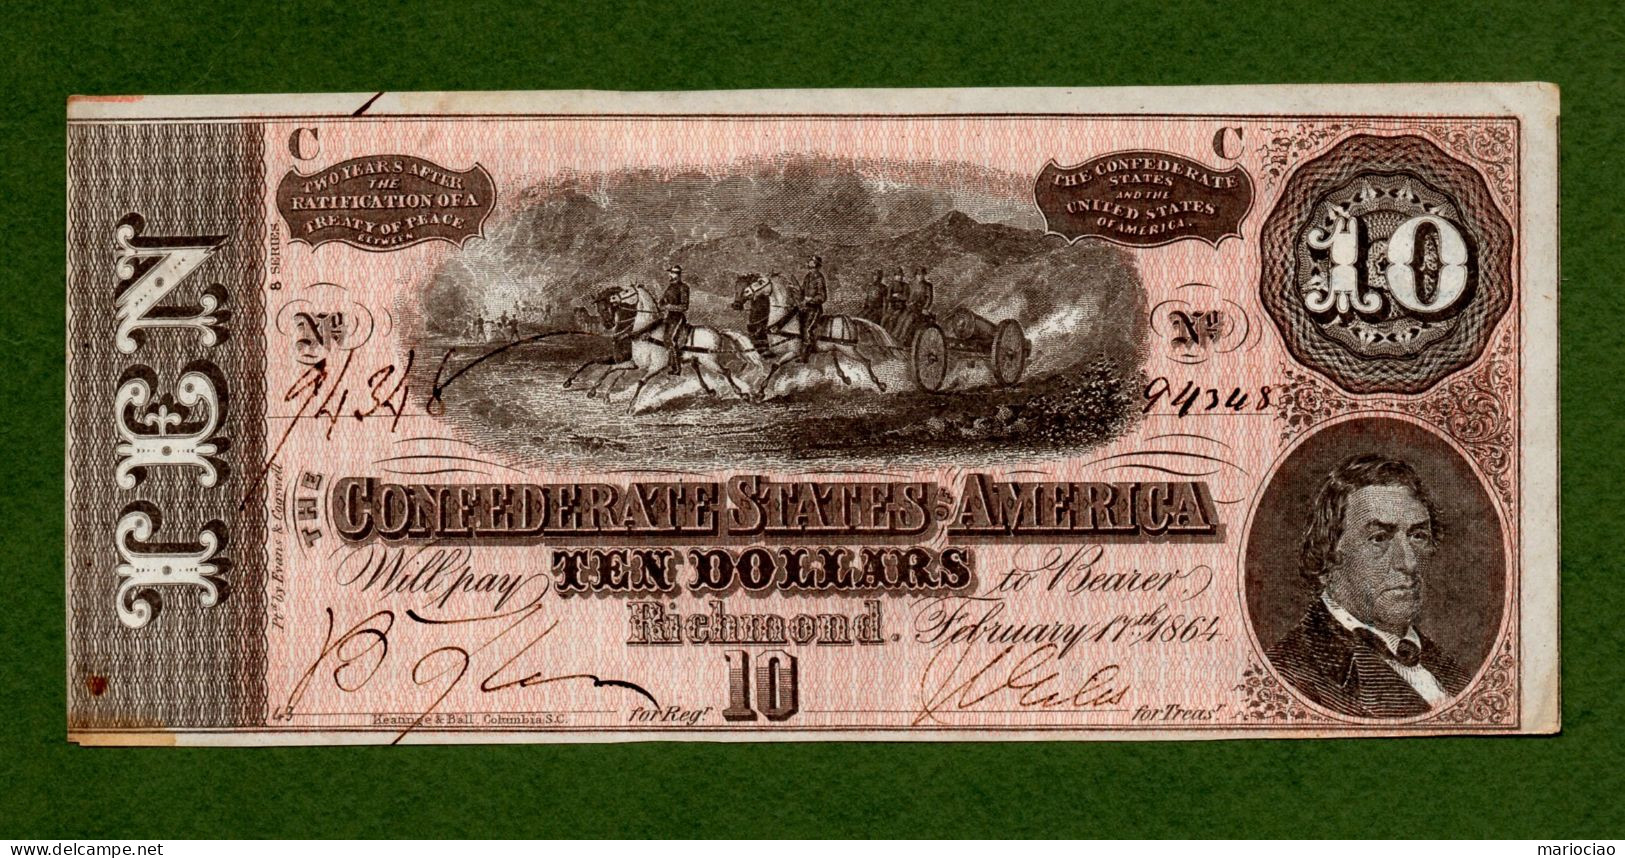 USA Note Civil War Confederate Note $10 Richmond February 17, 1864 N.94348 - Valuta Della Confederazione (1861-1864)